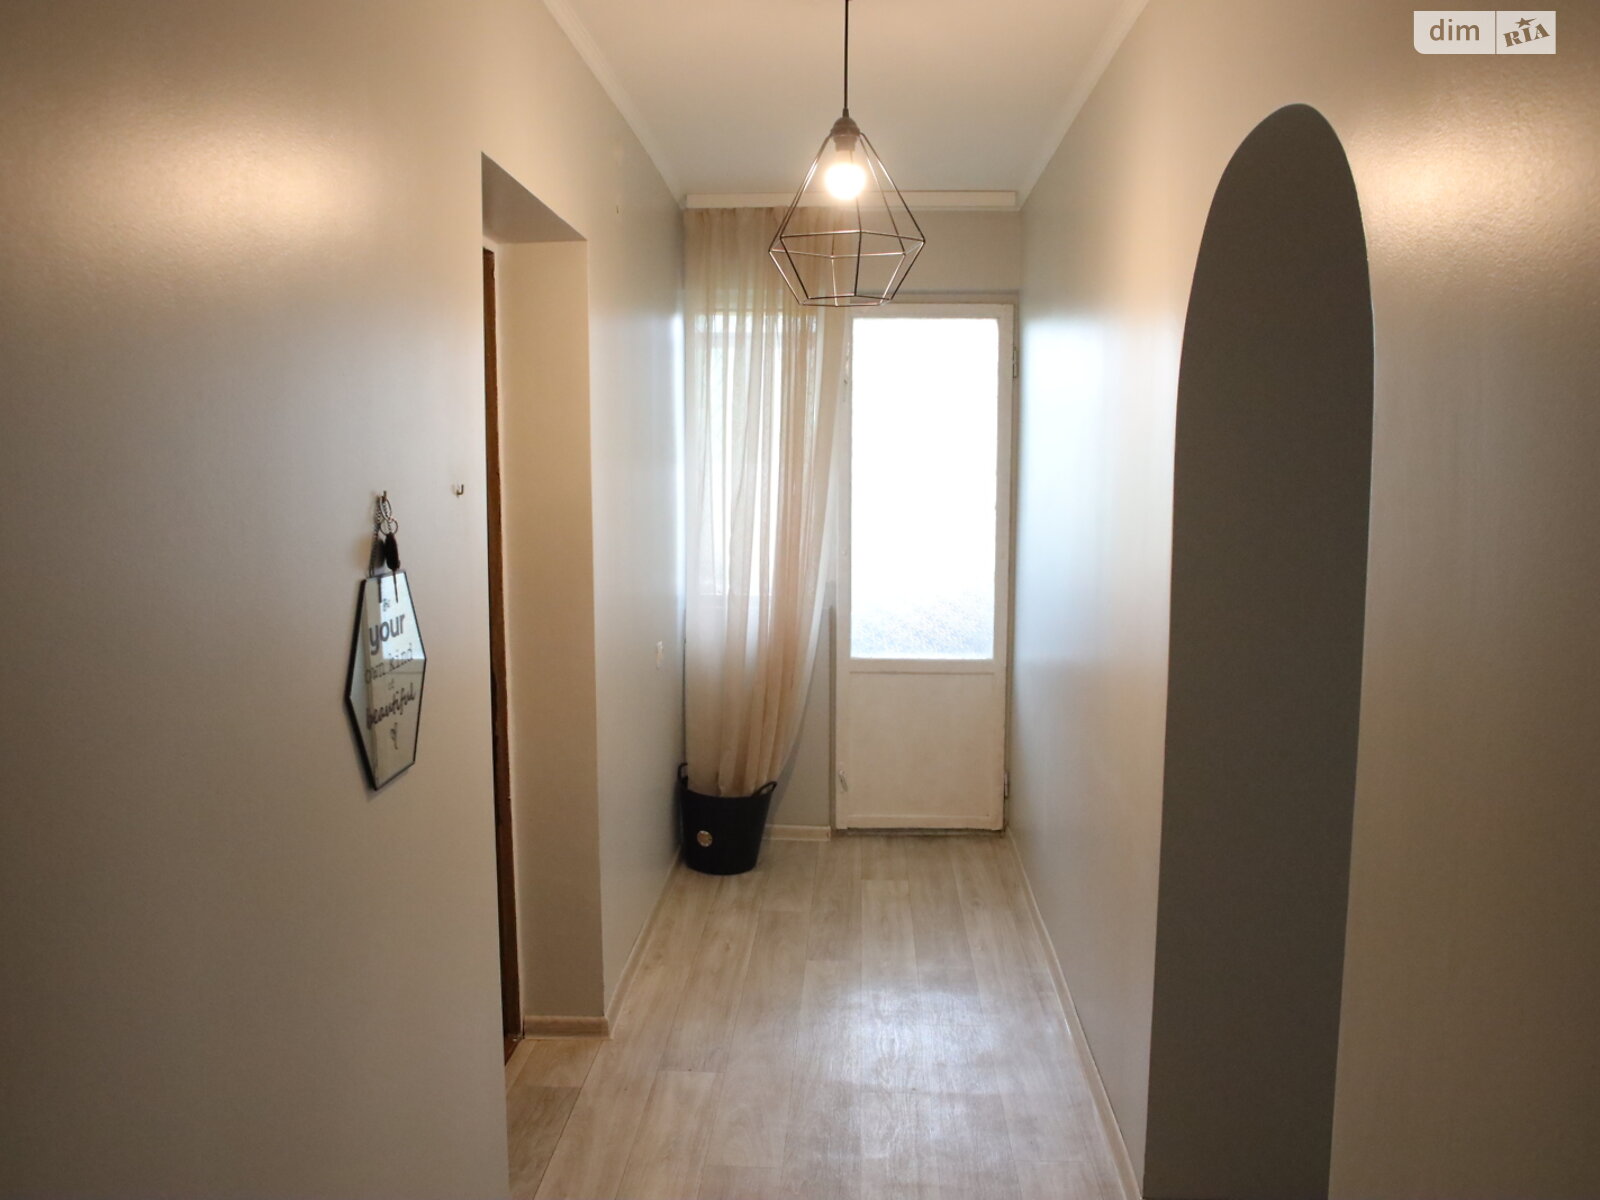 Продаж двокімнатної квартири в Луцьку, на просп. Молоді 10, район 33 мікрорайон фото 1